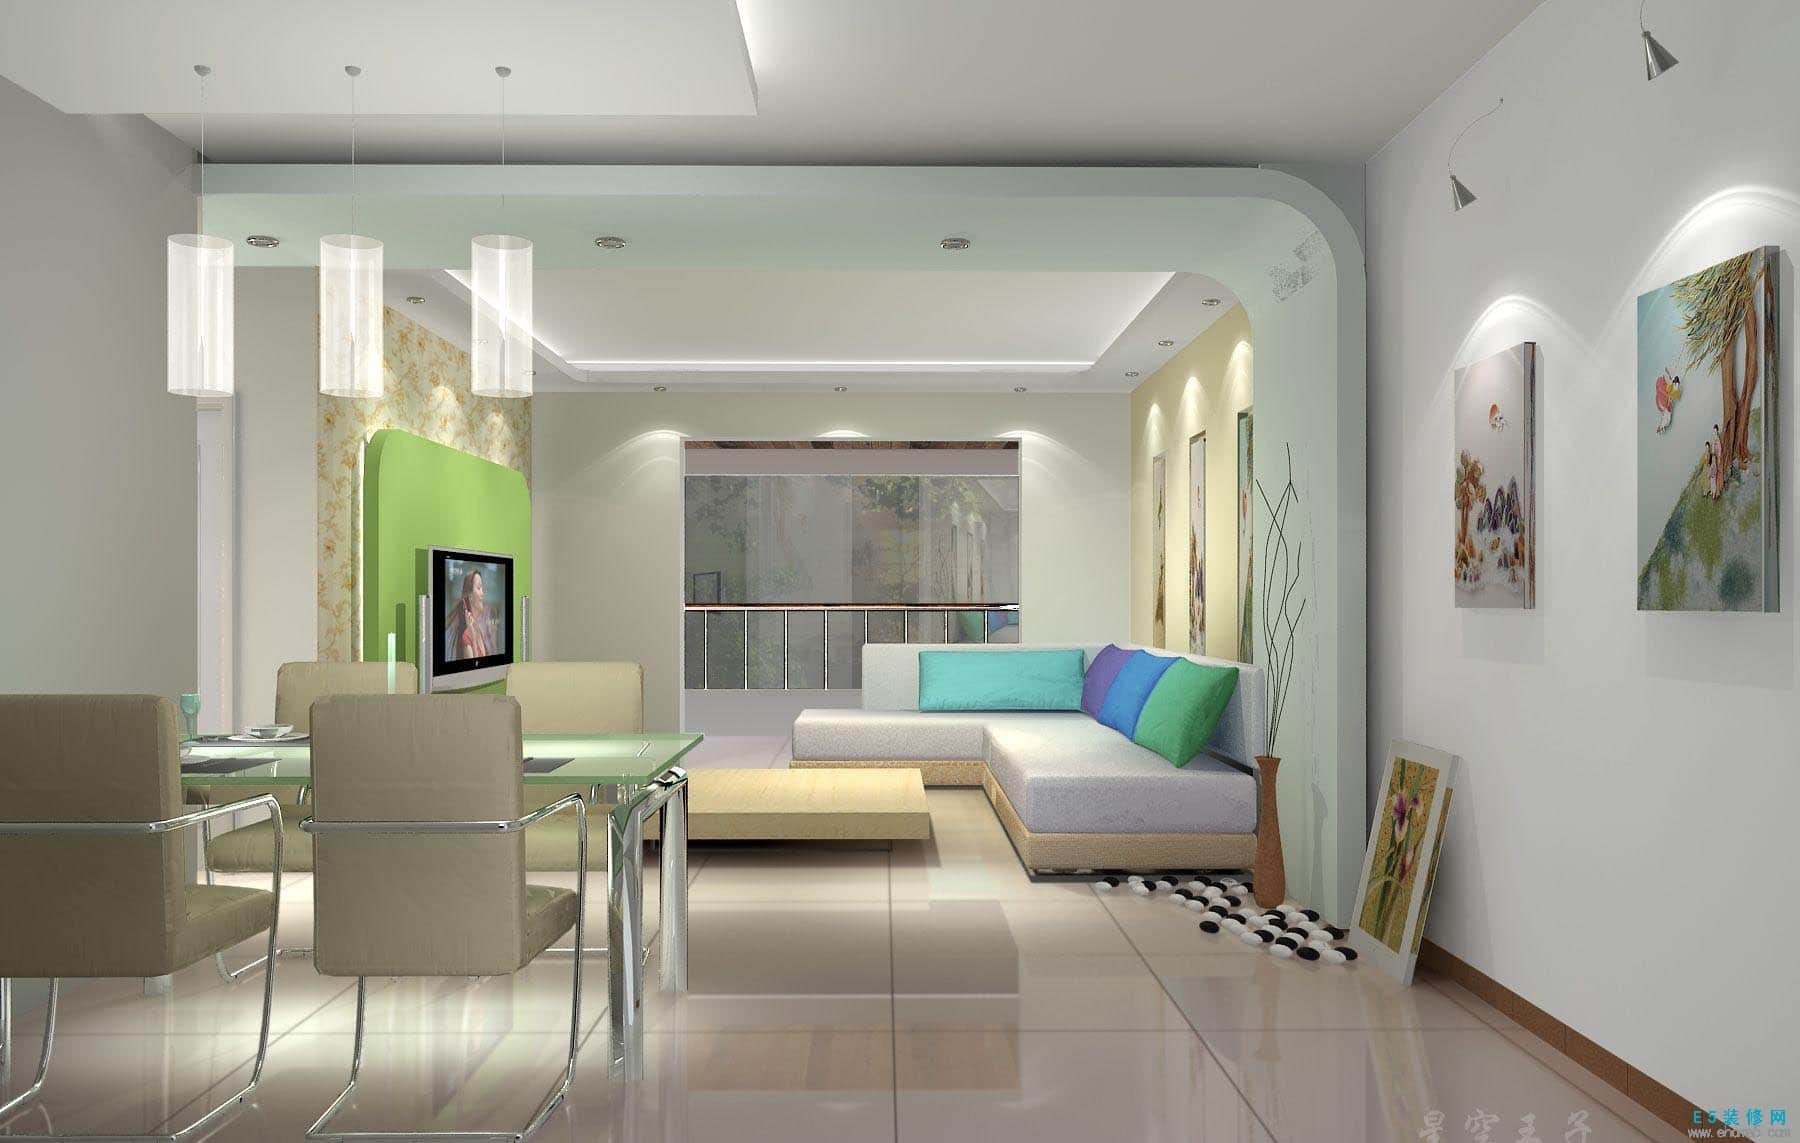 Modern Living Room Ideas Inspirational 35 Modern Living Room Designs for 2017 2018